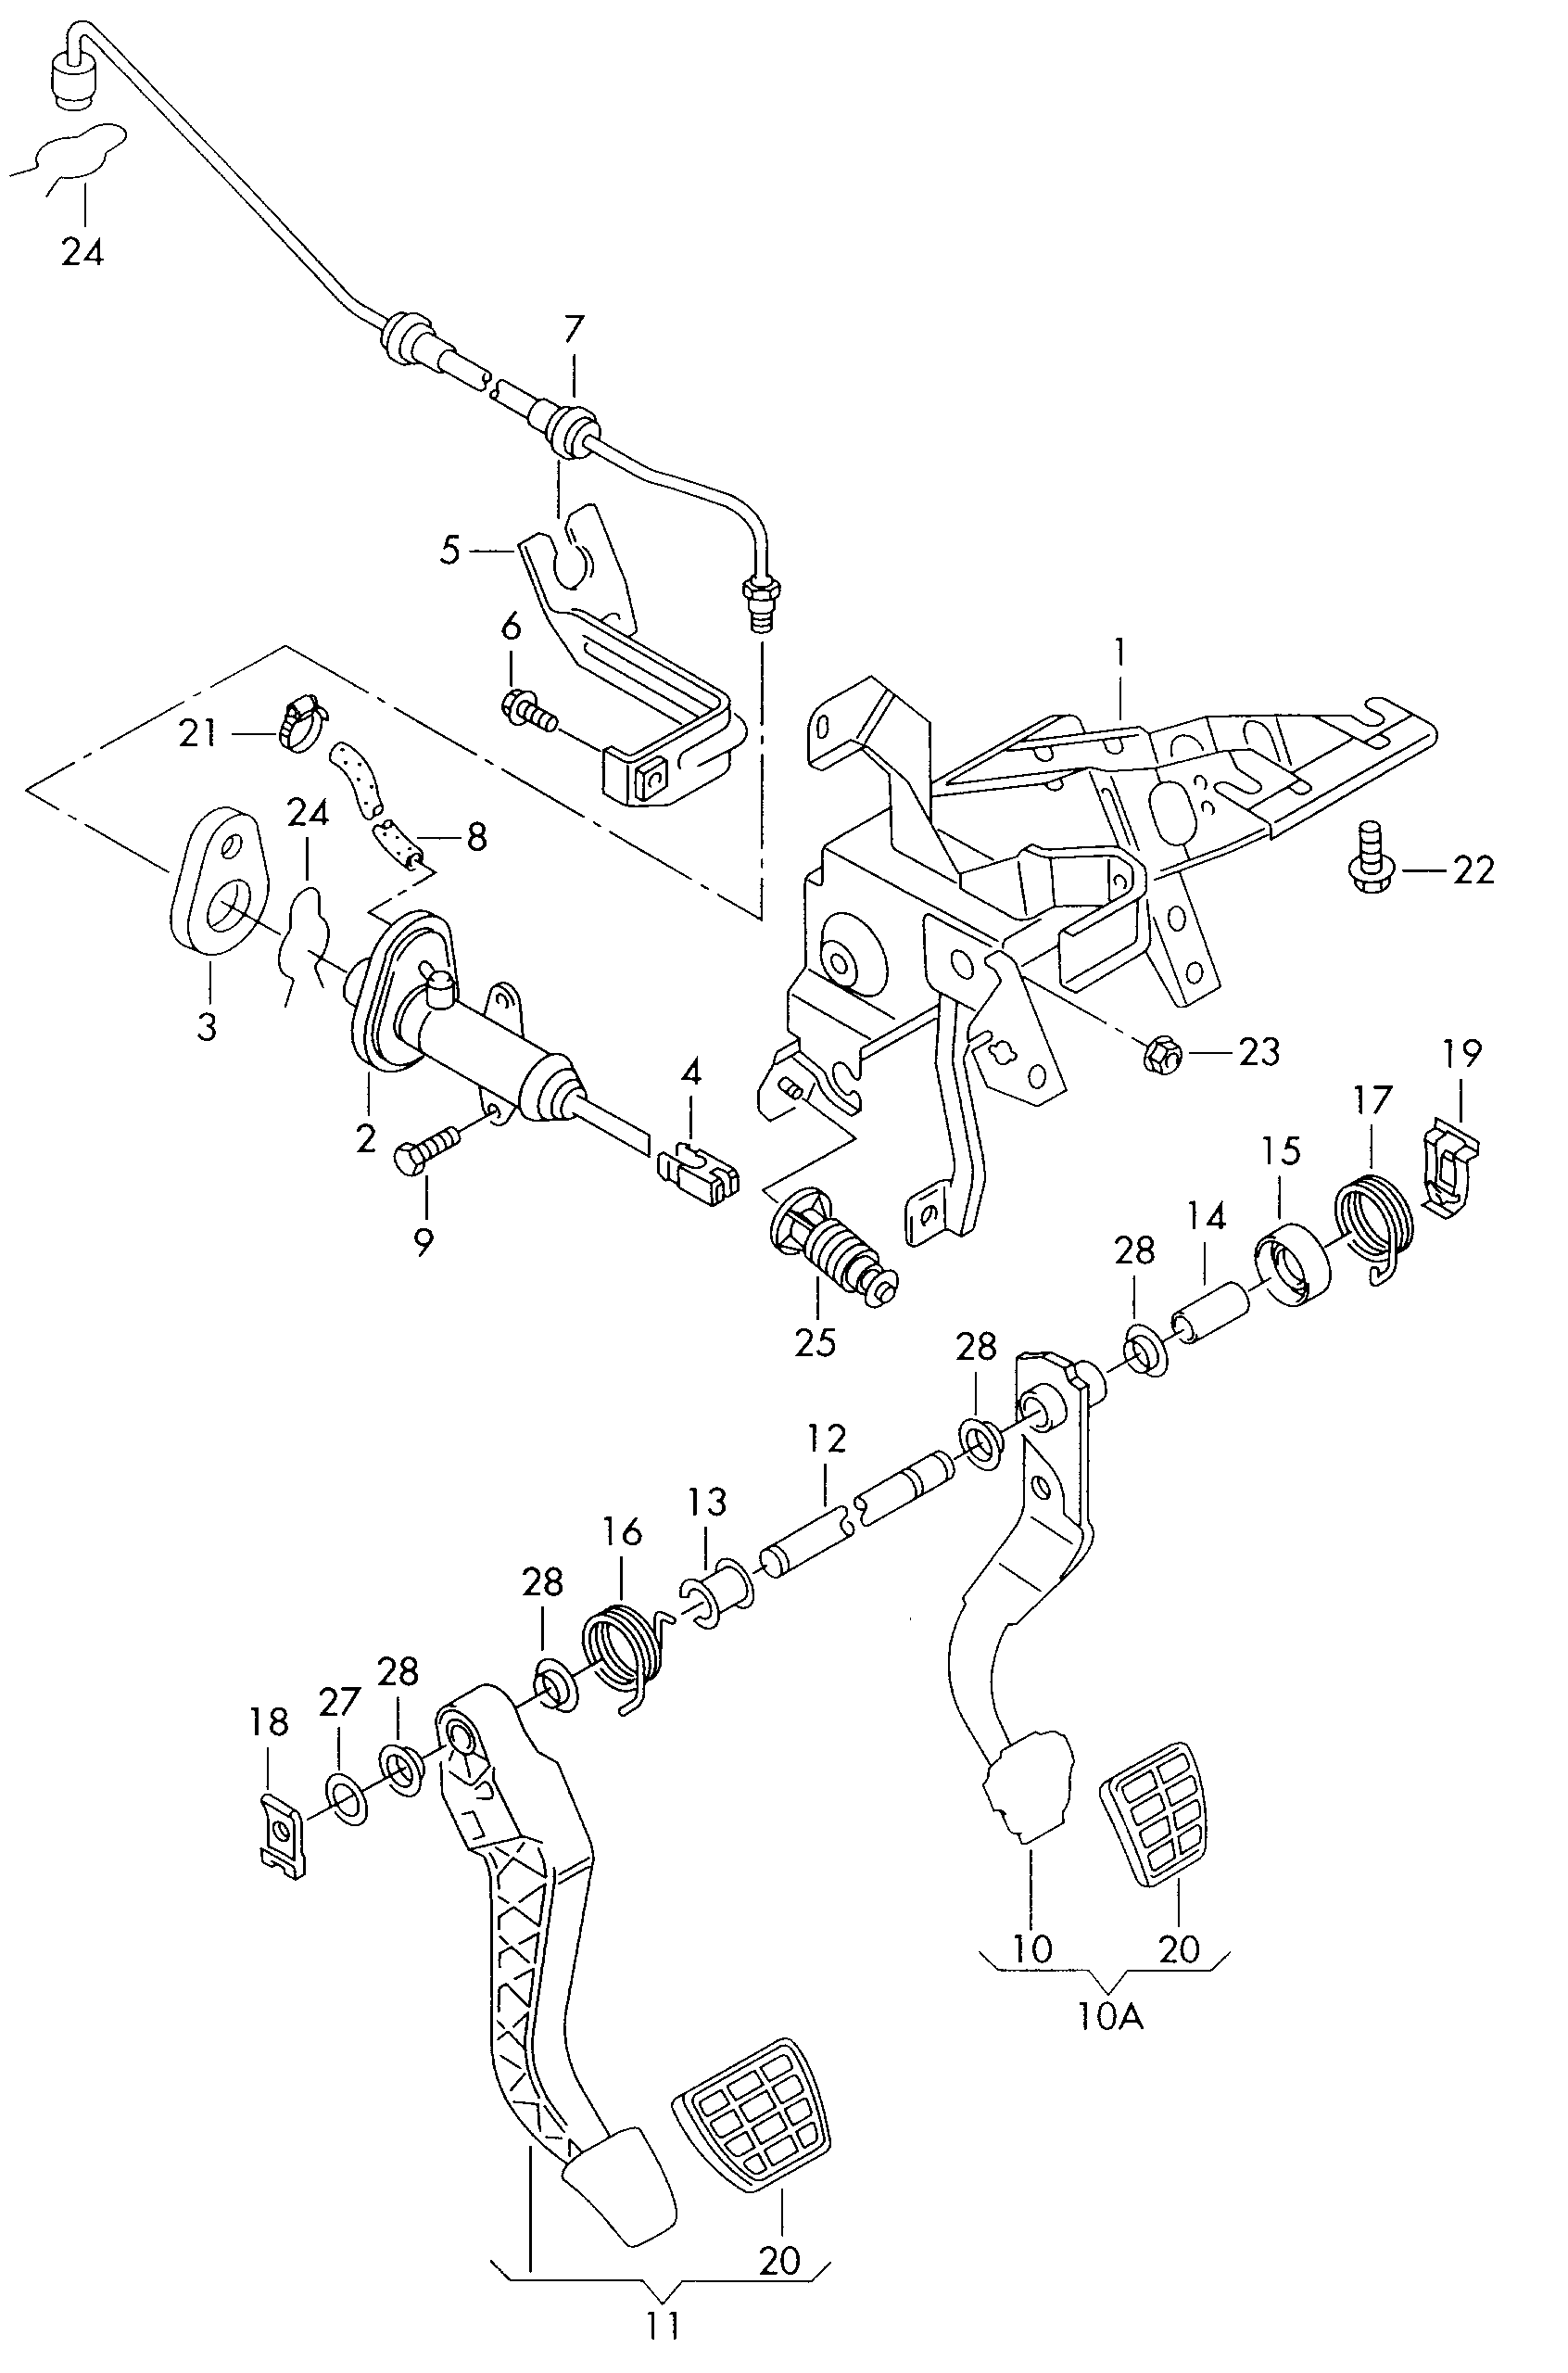 制动和离合器
踏板机构 - Alhambra(AL)  